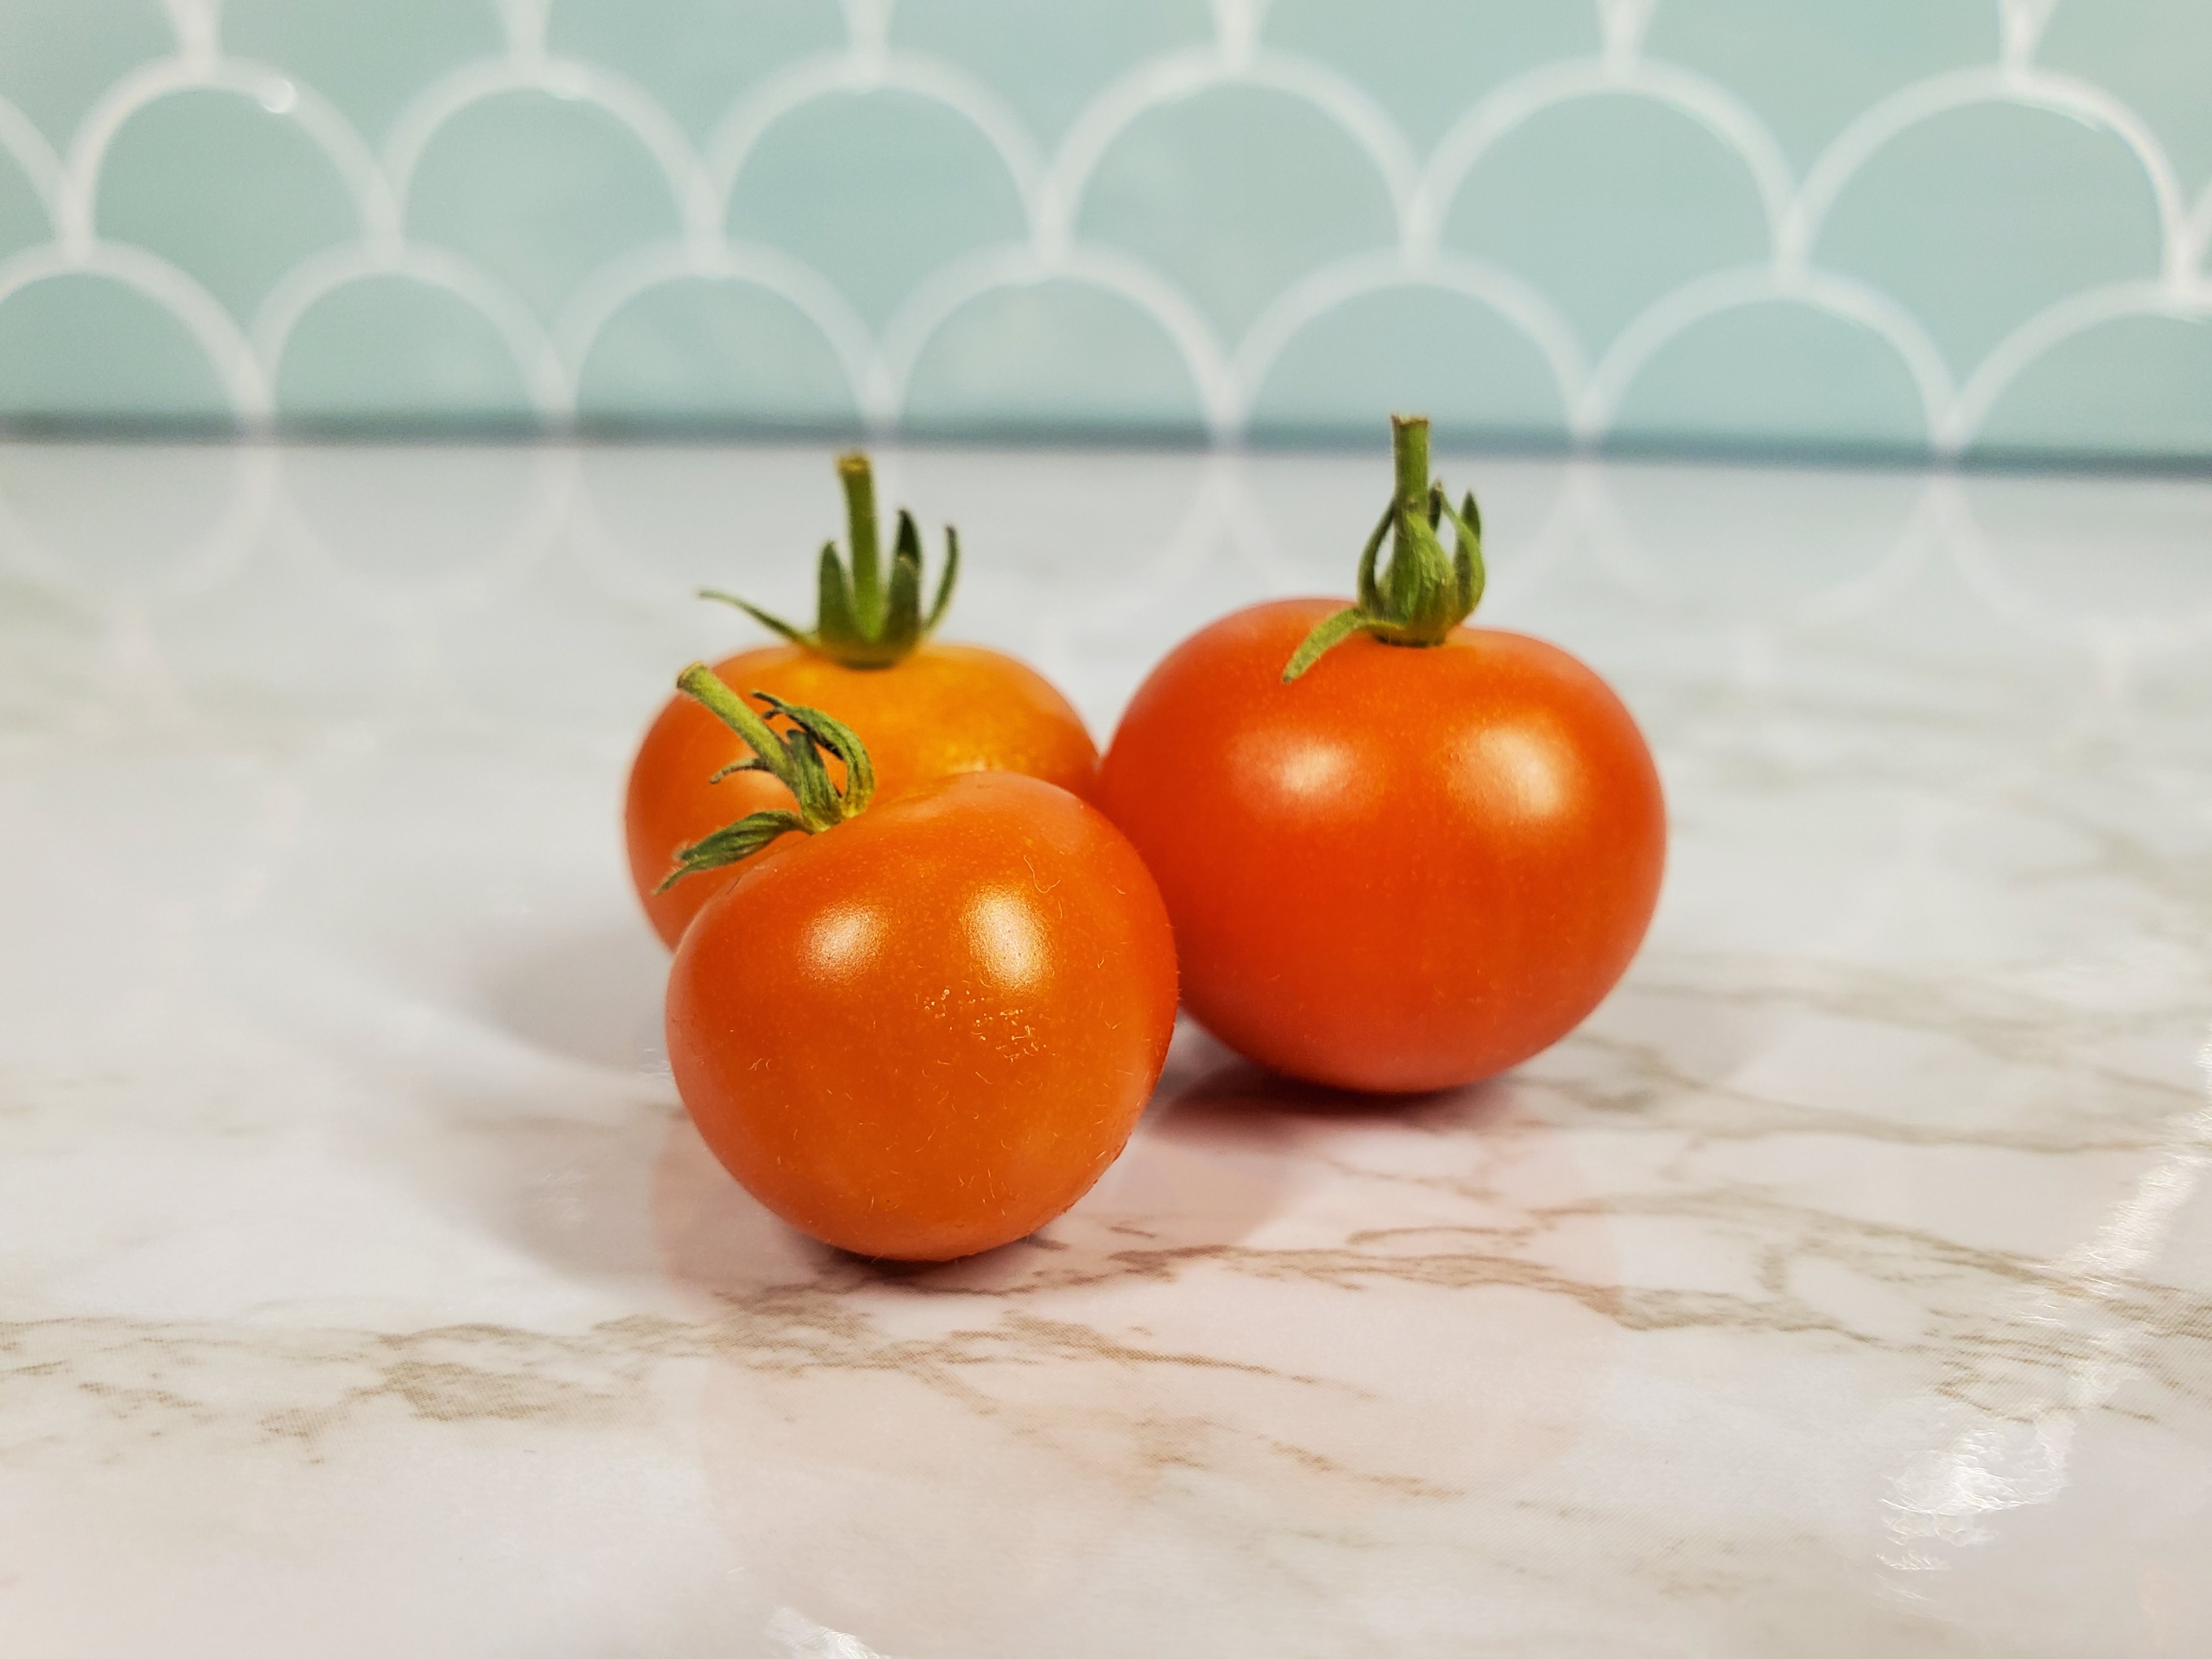 Fresh Cherry Tomatoes on the white granite countertop